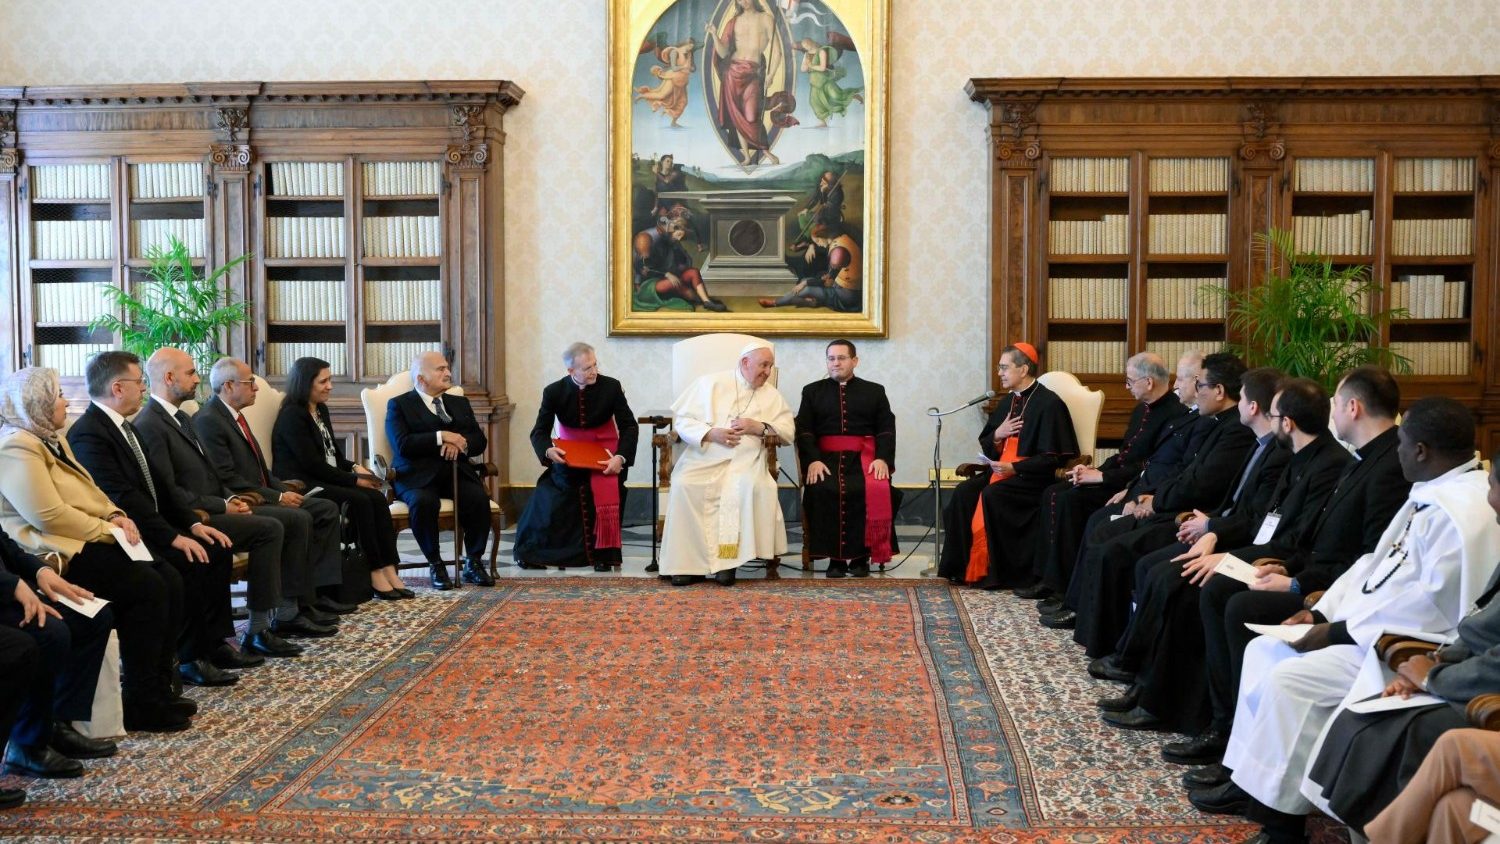 Папа: межрелигиозный диалог требует искренности и взаимного уважения